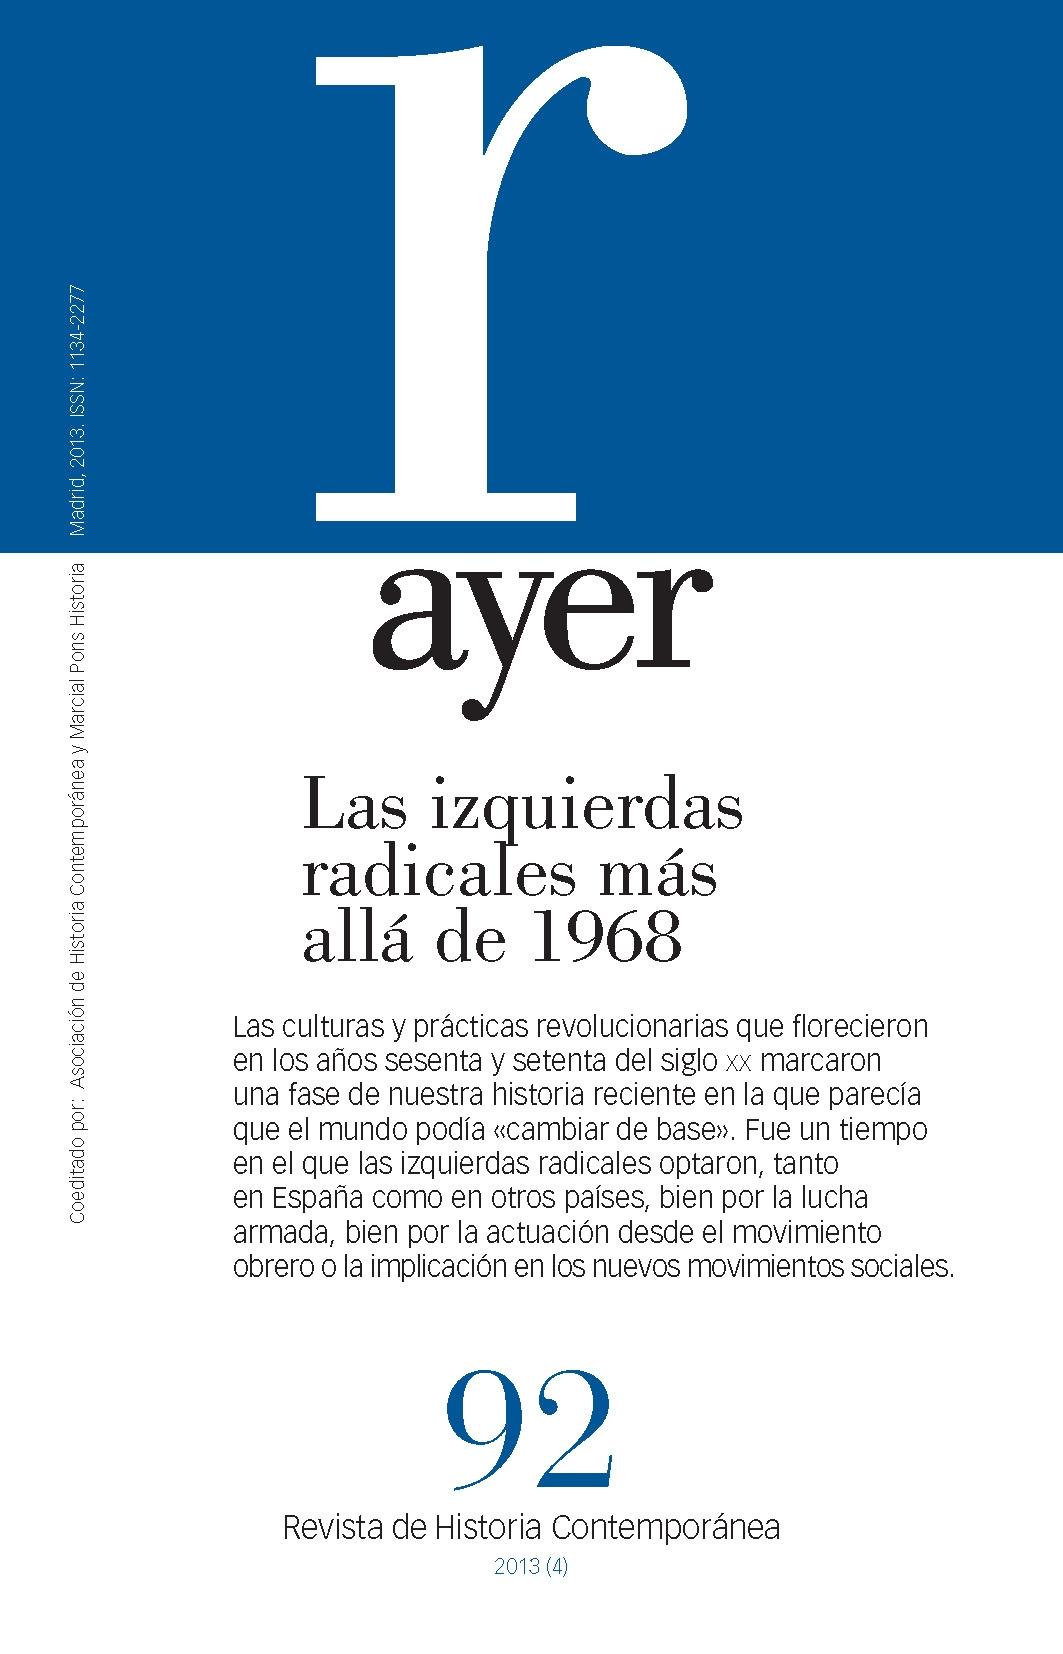 Revista Ayer Nº92 "Las Izquierdas Radicales Más Allá de 1968"